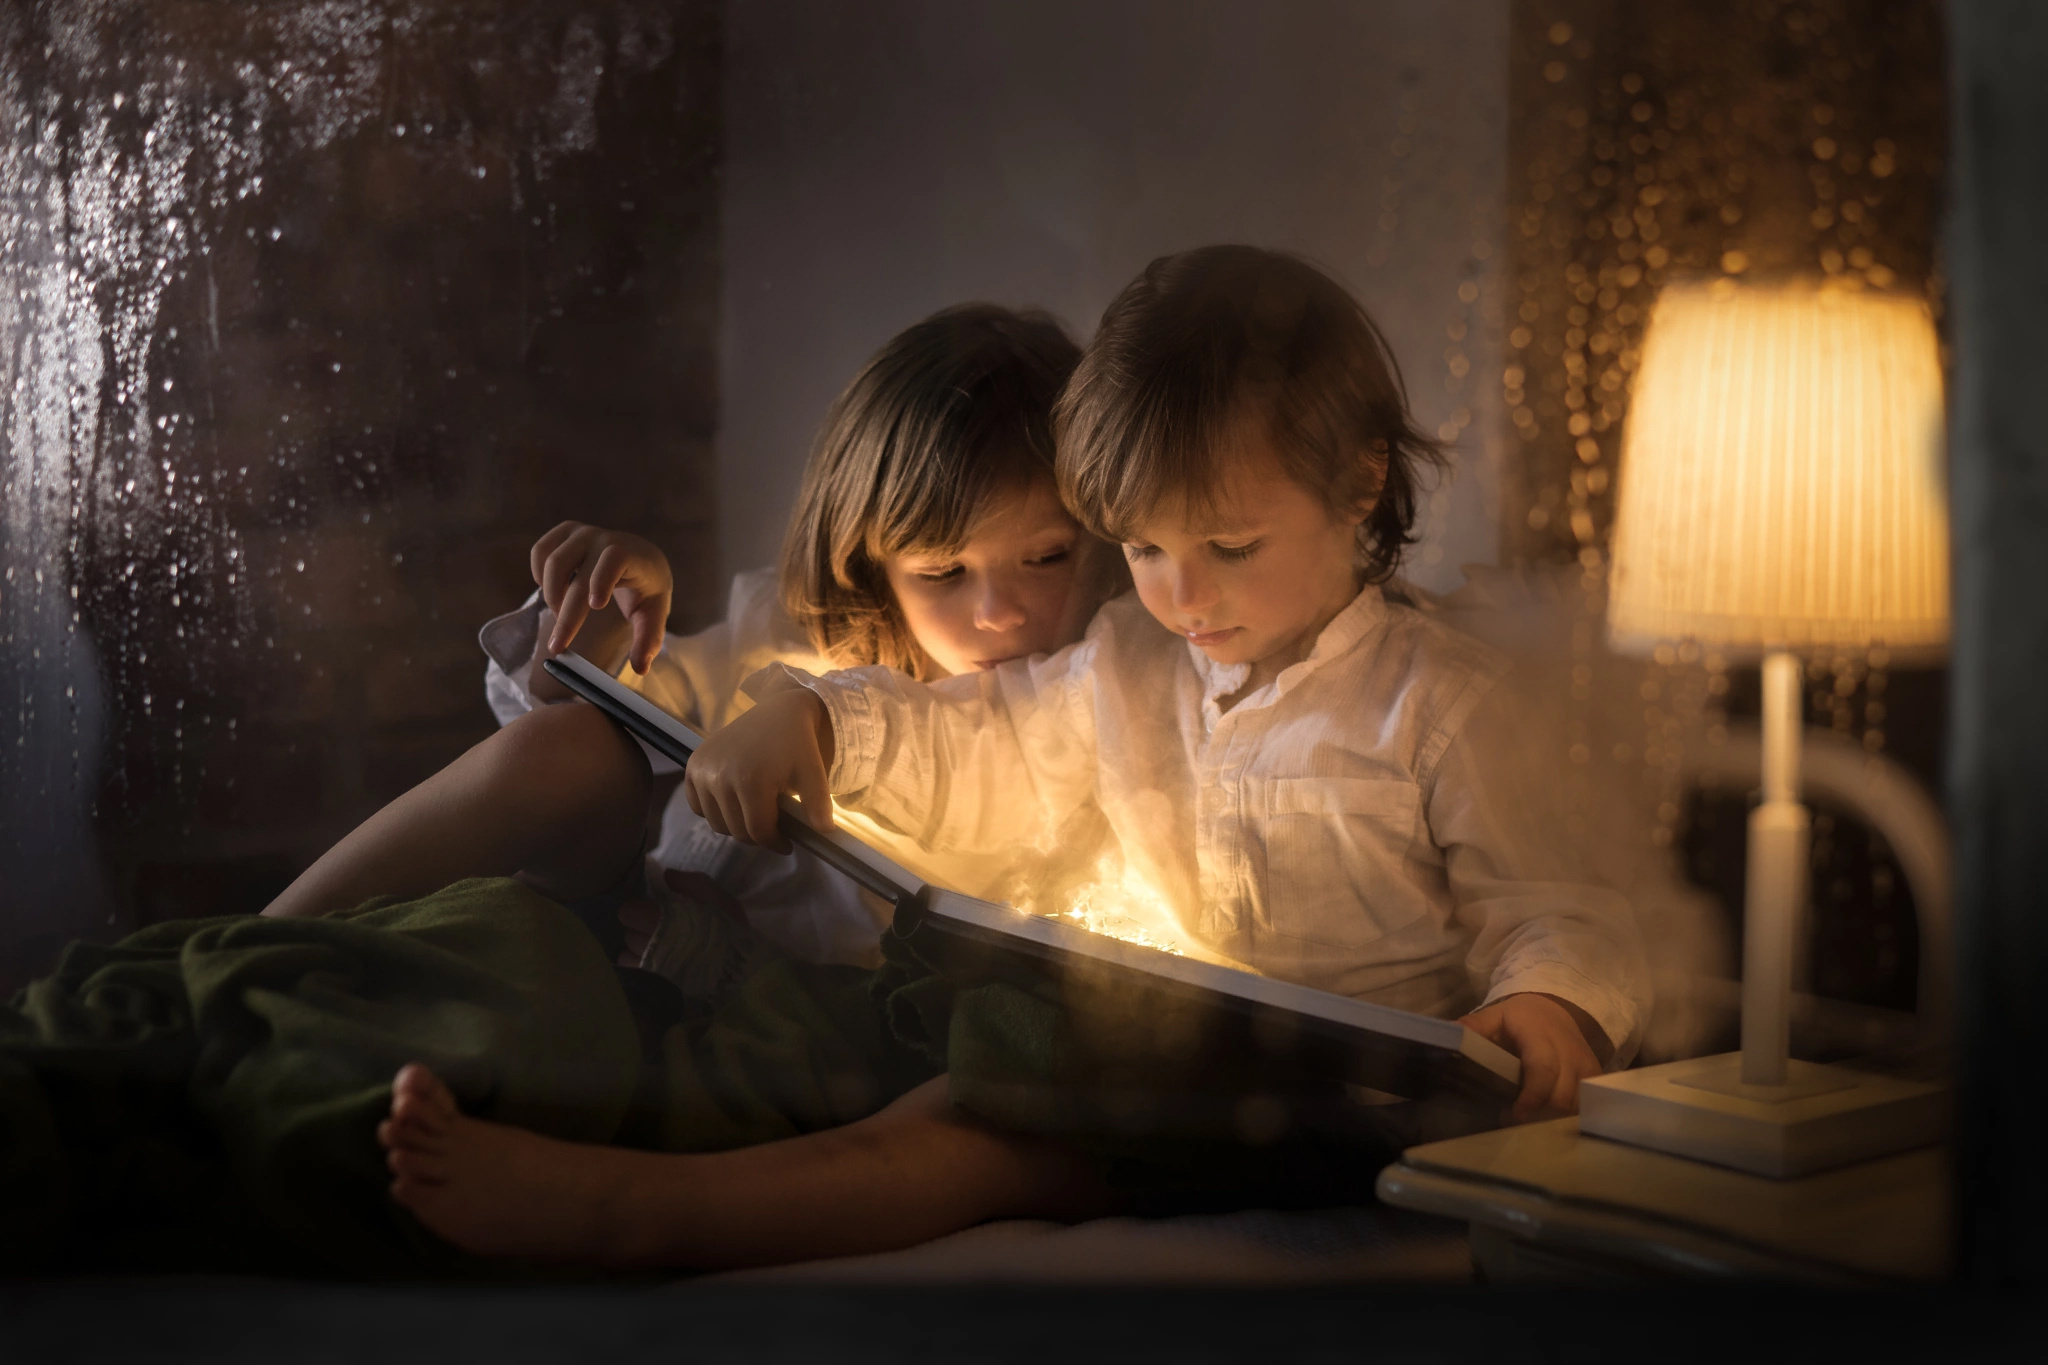 Читать на ночь взрослым. Вечер для детей. Фотосессия чтение книги на ночь детям. Девушка и мальчиков вечером. Дети читают.